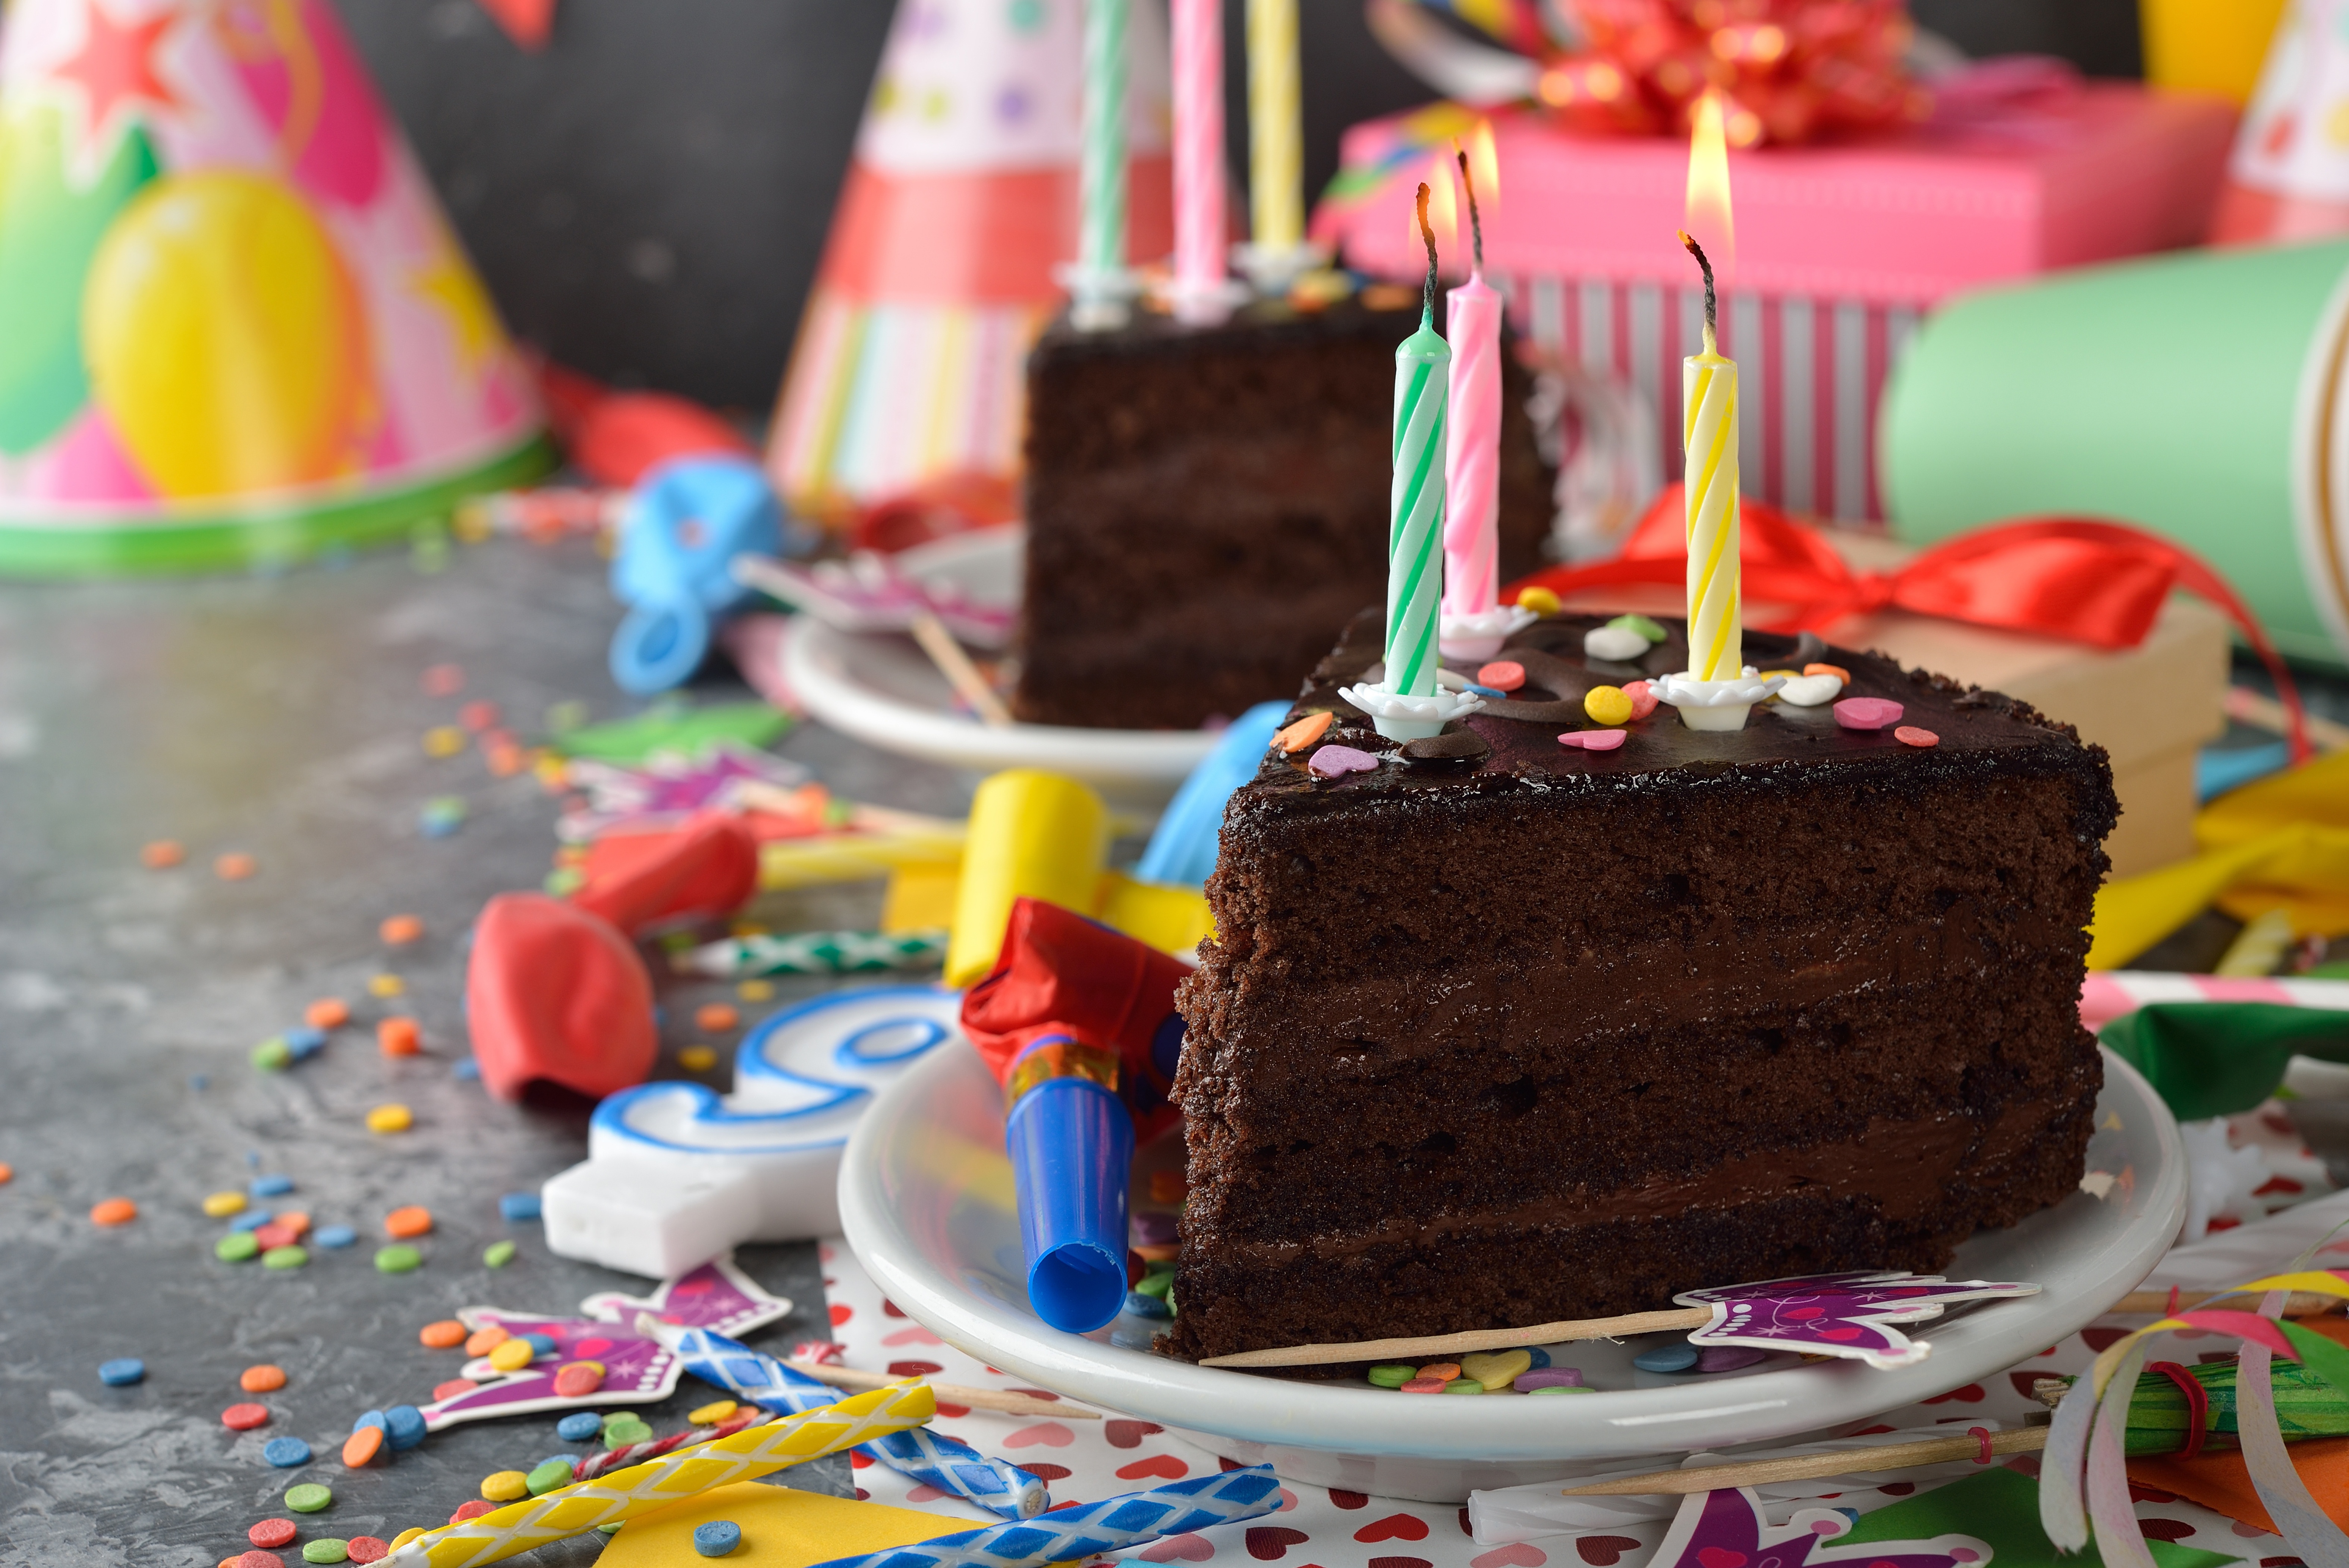 Cake candle. Праздничный торт. Тортик с днем рождения. Торт со свечками. Именинный торт.